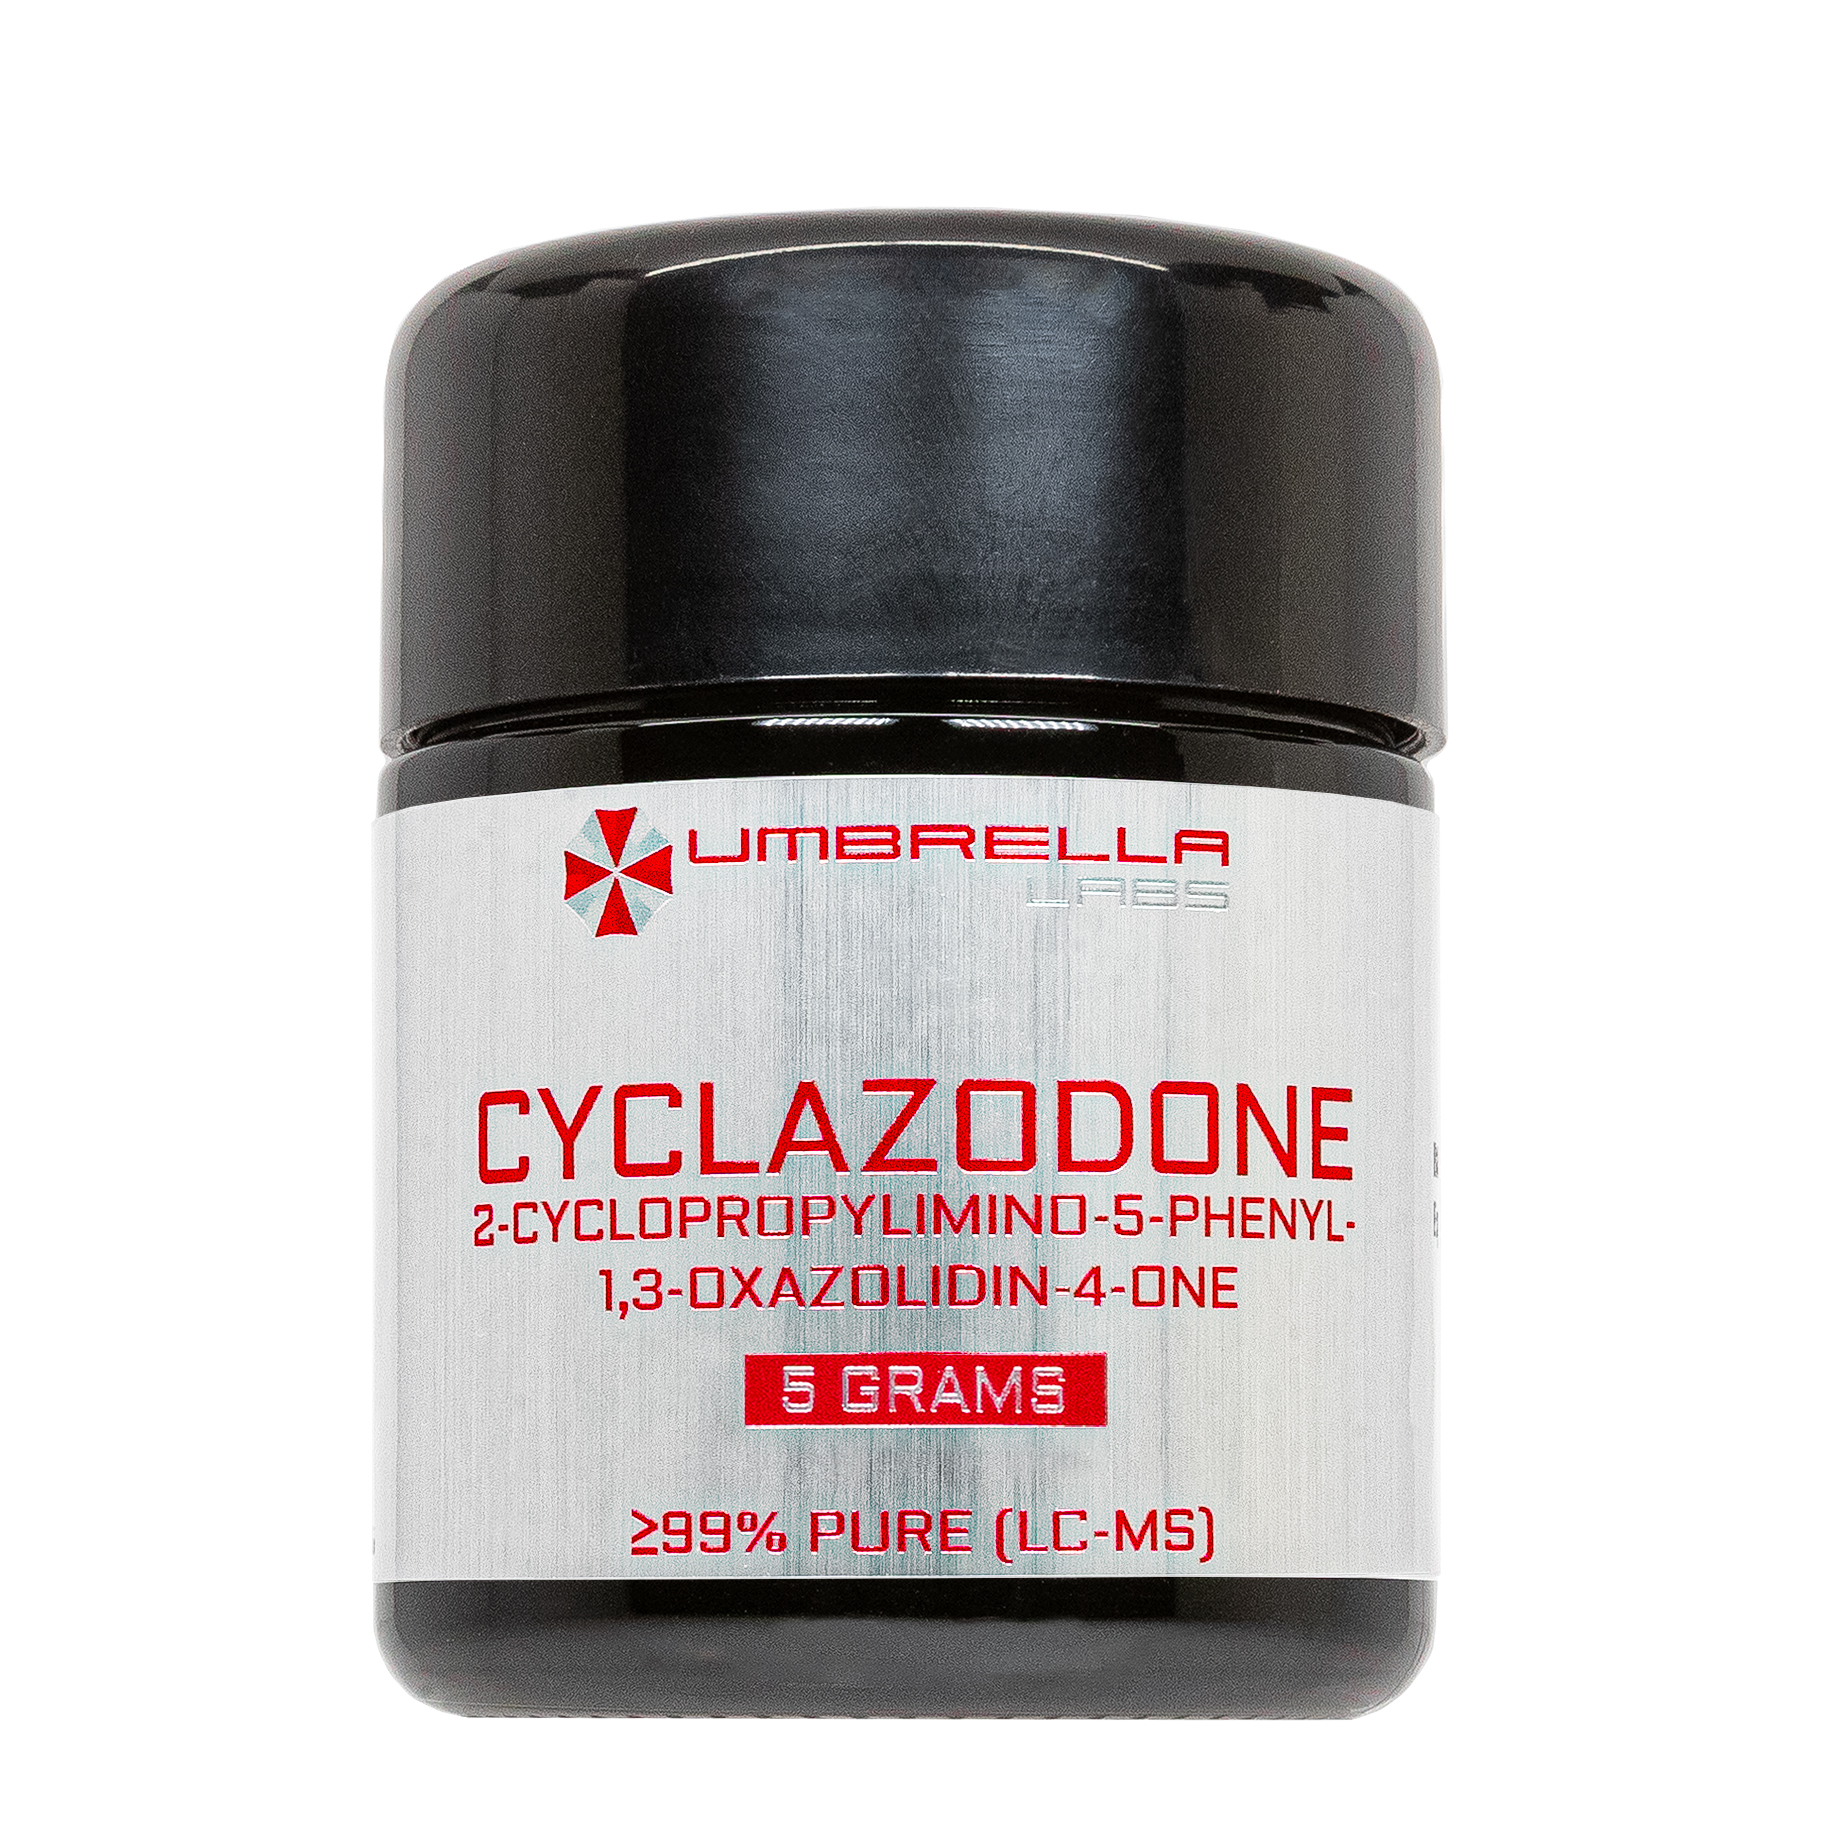 cyclazodone powder